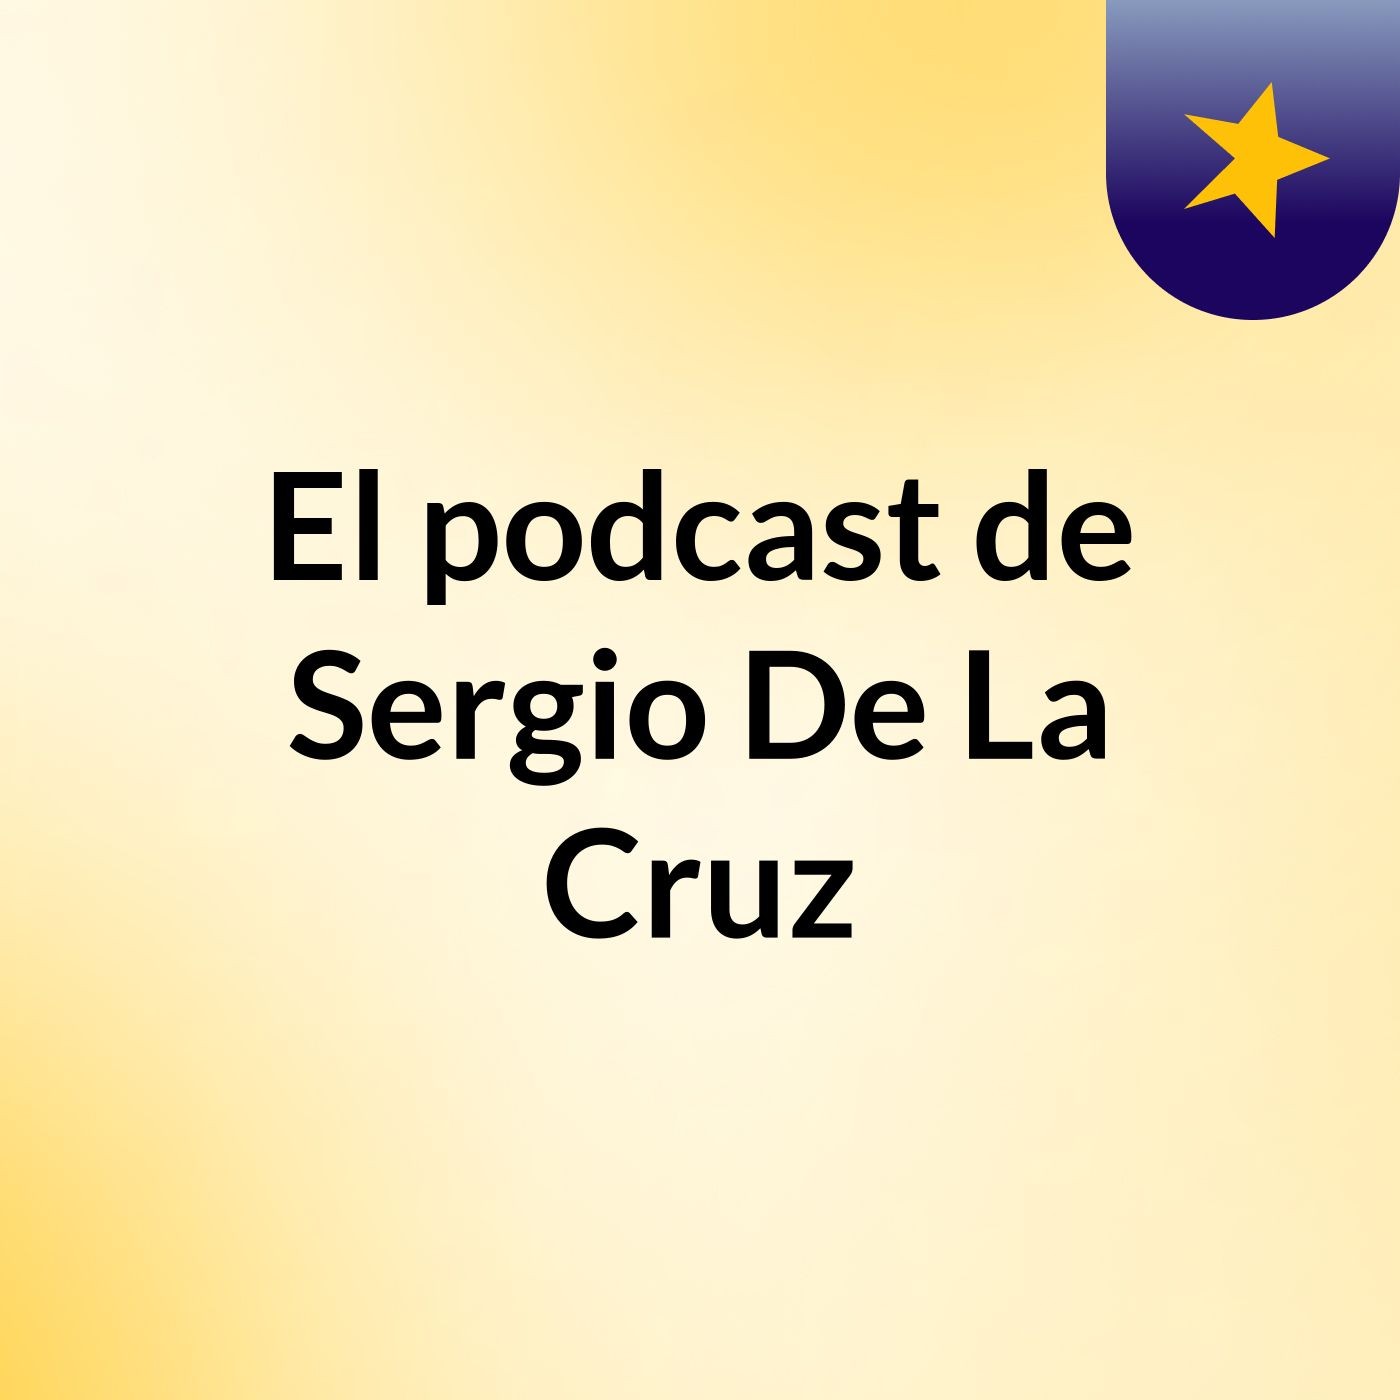 El podcast de Sergio De La Cruz